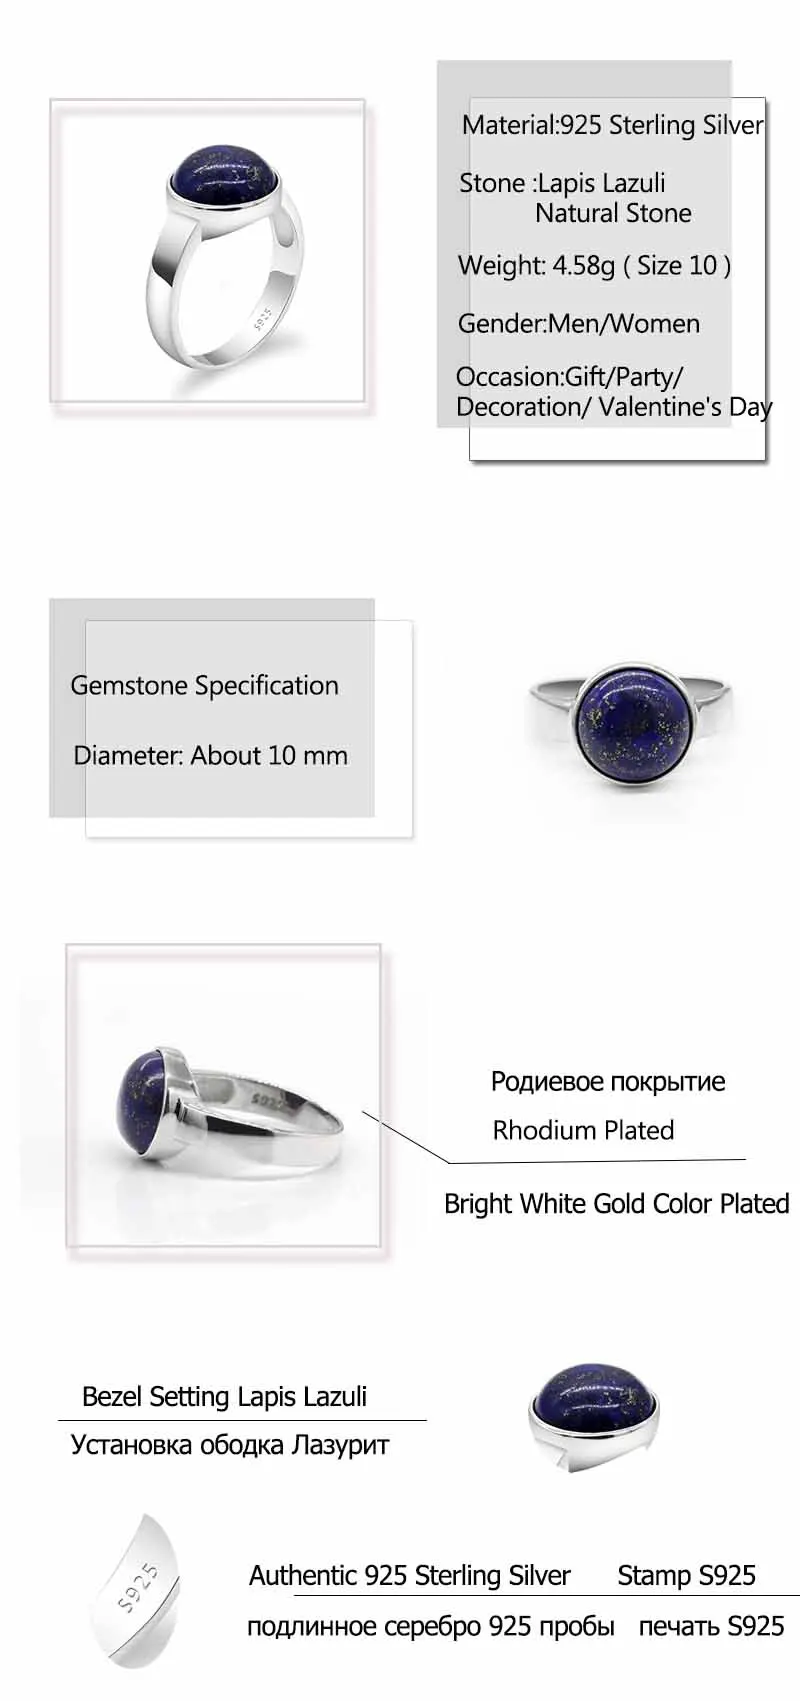 S925 Стерлинговое Серебро, синий натуральный камень, кольца, Ретро стиль, лазурит, одноцветное серебро, для мужчин и женщин, кольцо, ювелирное изделие для помолвки, подарки